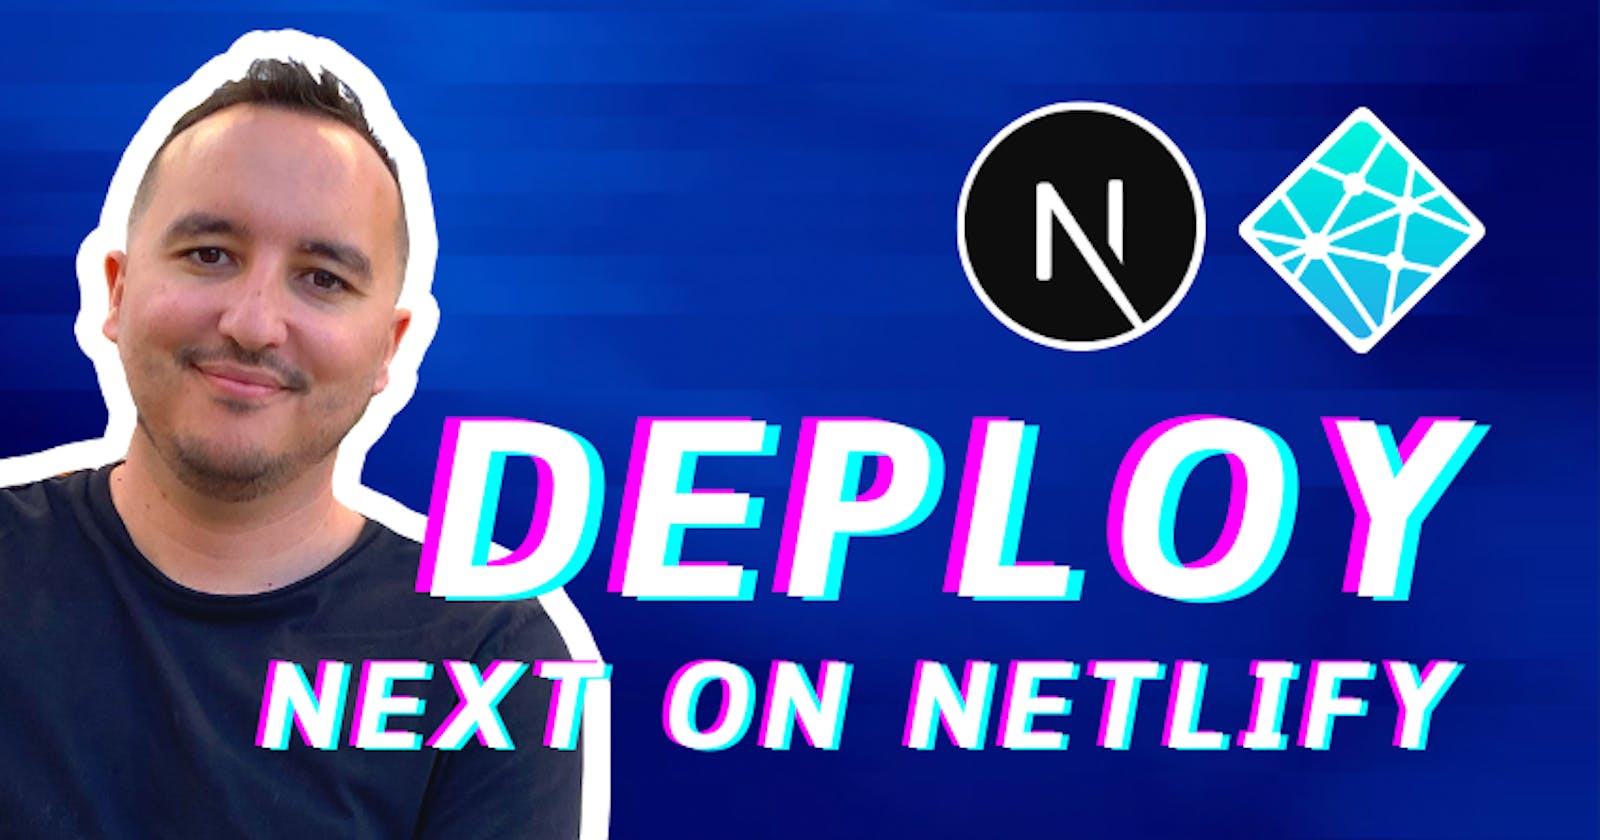 Deploy NextJs to Netlify